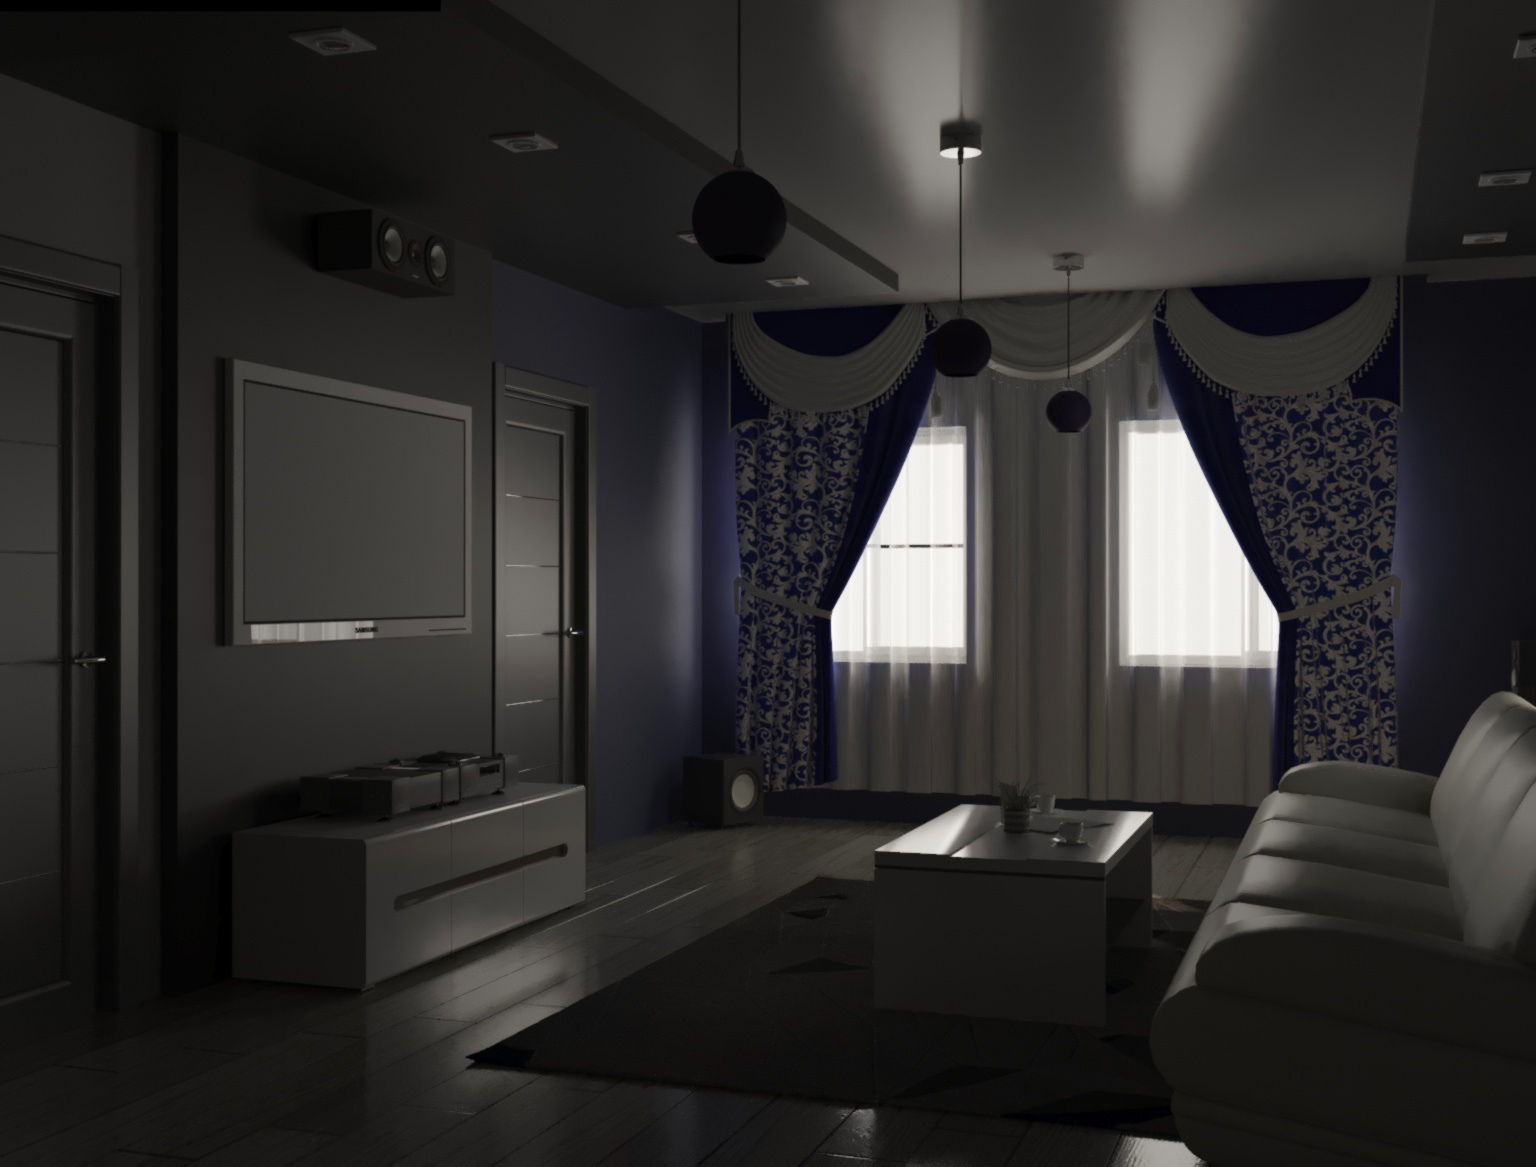 Sala de estar em 3d max corona render imagem